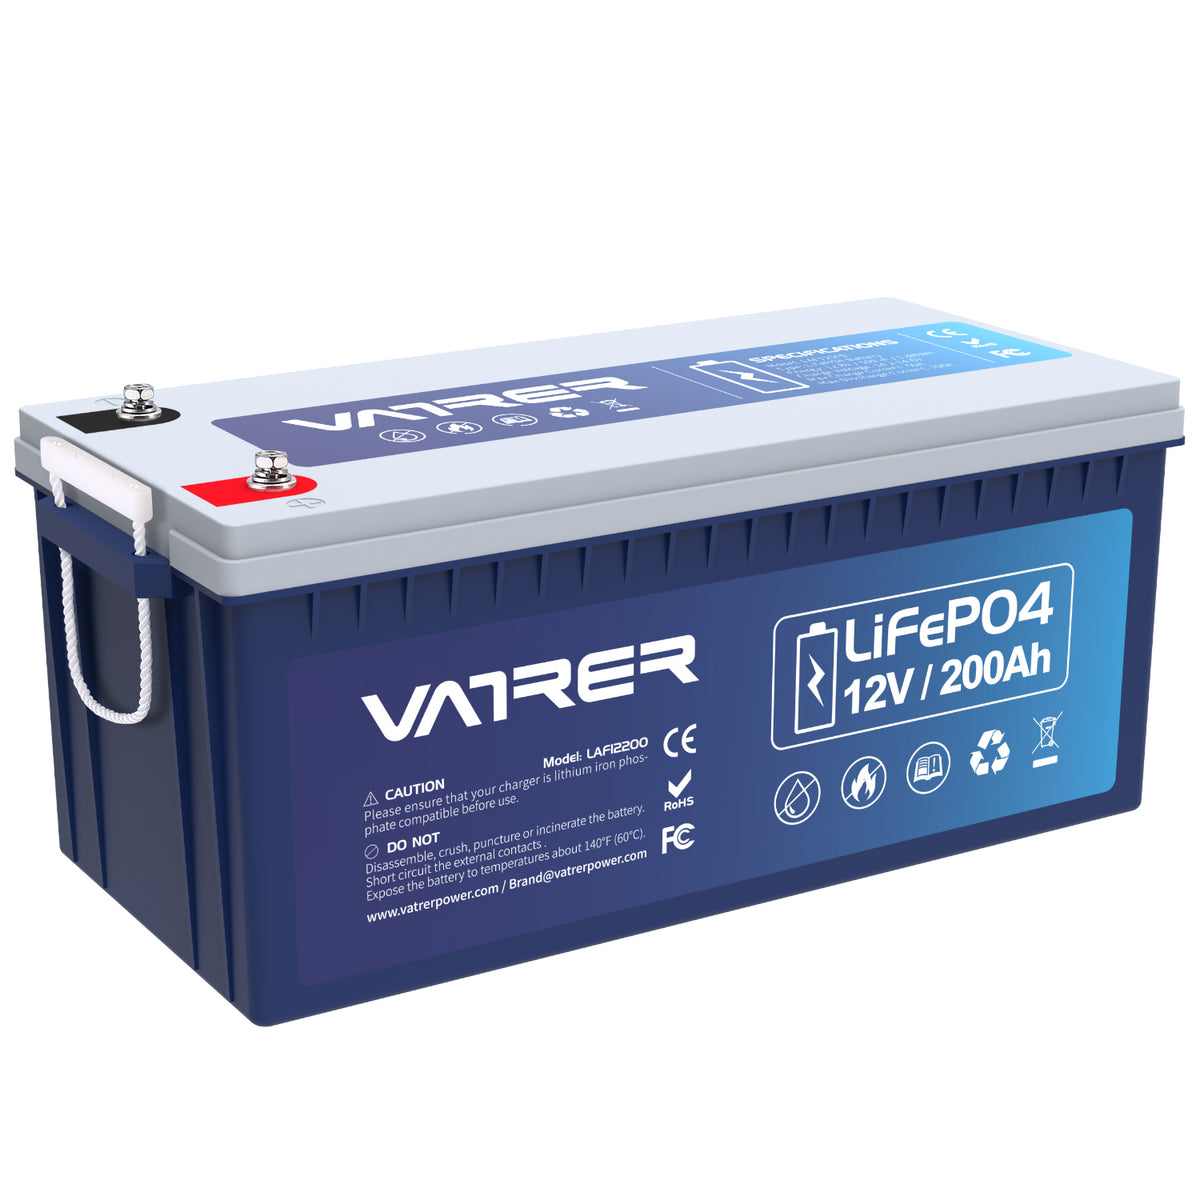 Vatrer 12V 200Ah Batería de Litio LiFePO4, BMS Incorporado de 100A y Corte de Baja Temperatura. Baterías de LiFePO4.